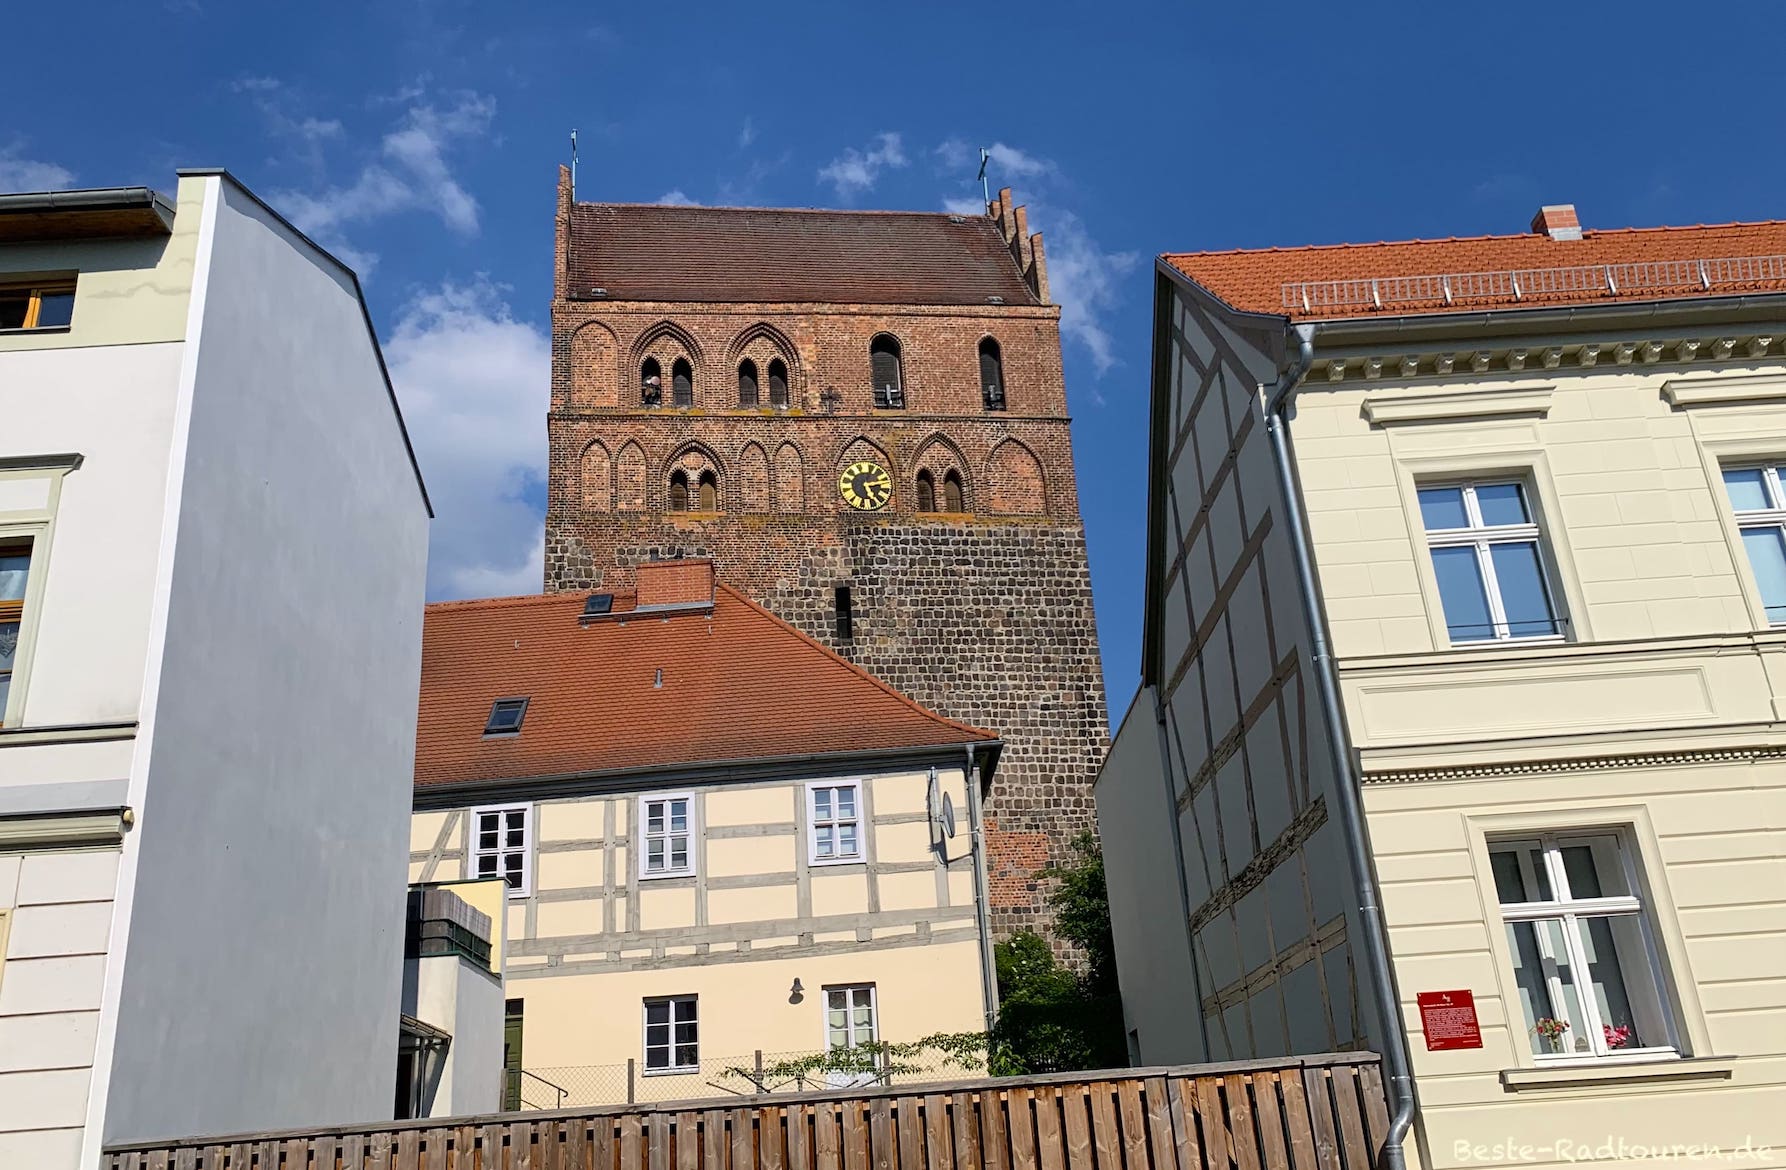 Berliner Straße in Angermünde: Turm der Kirche St. Marien zwischen Altbauten und Fachwerk-Häusern